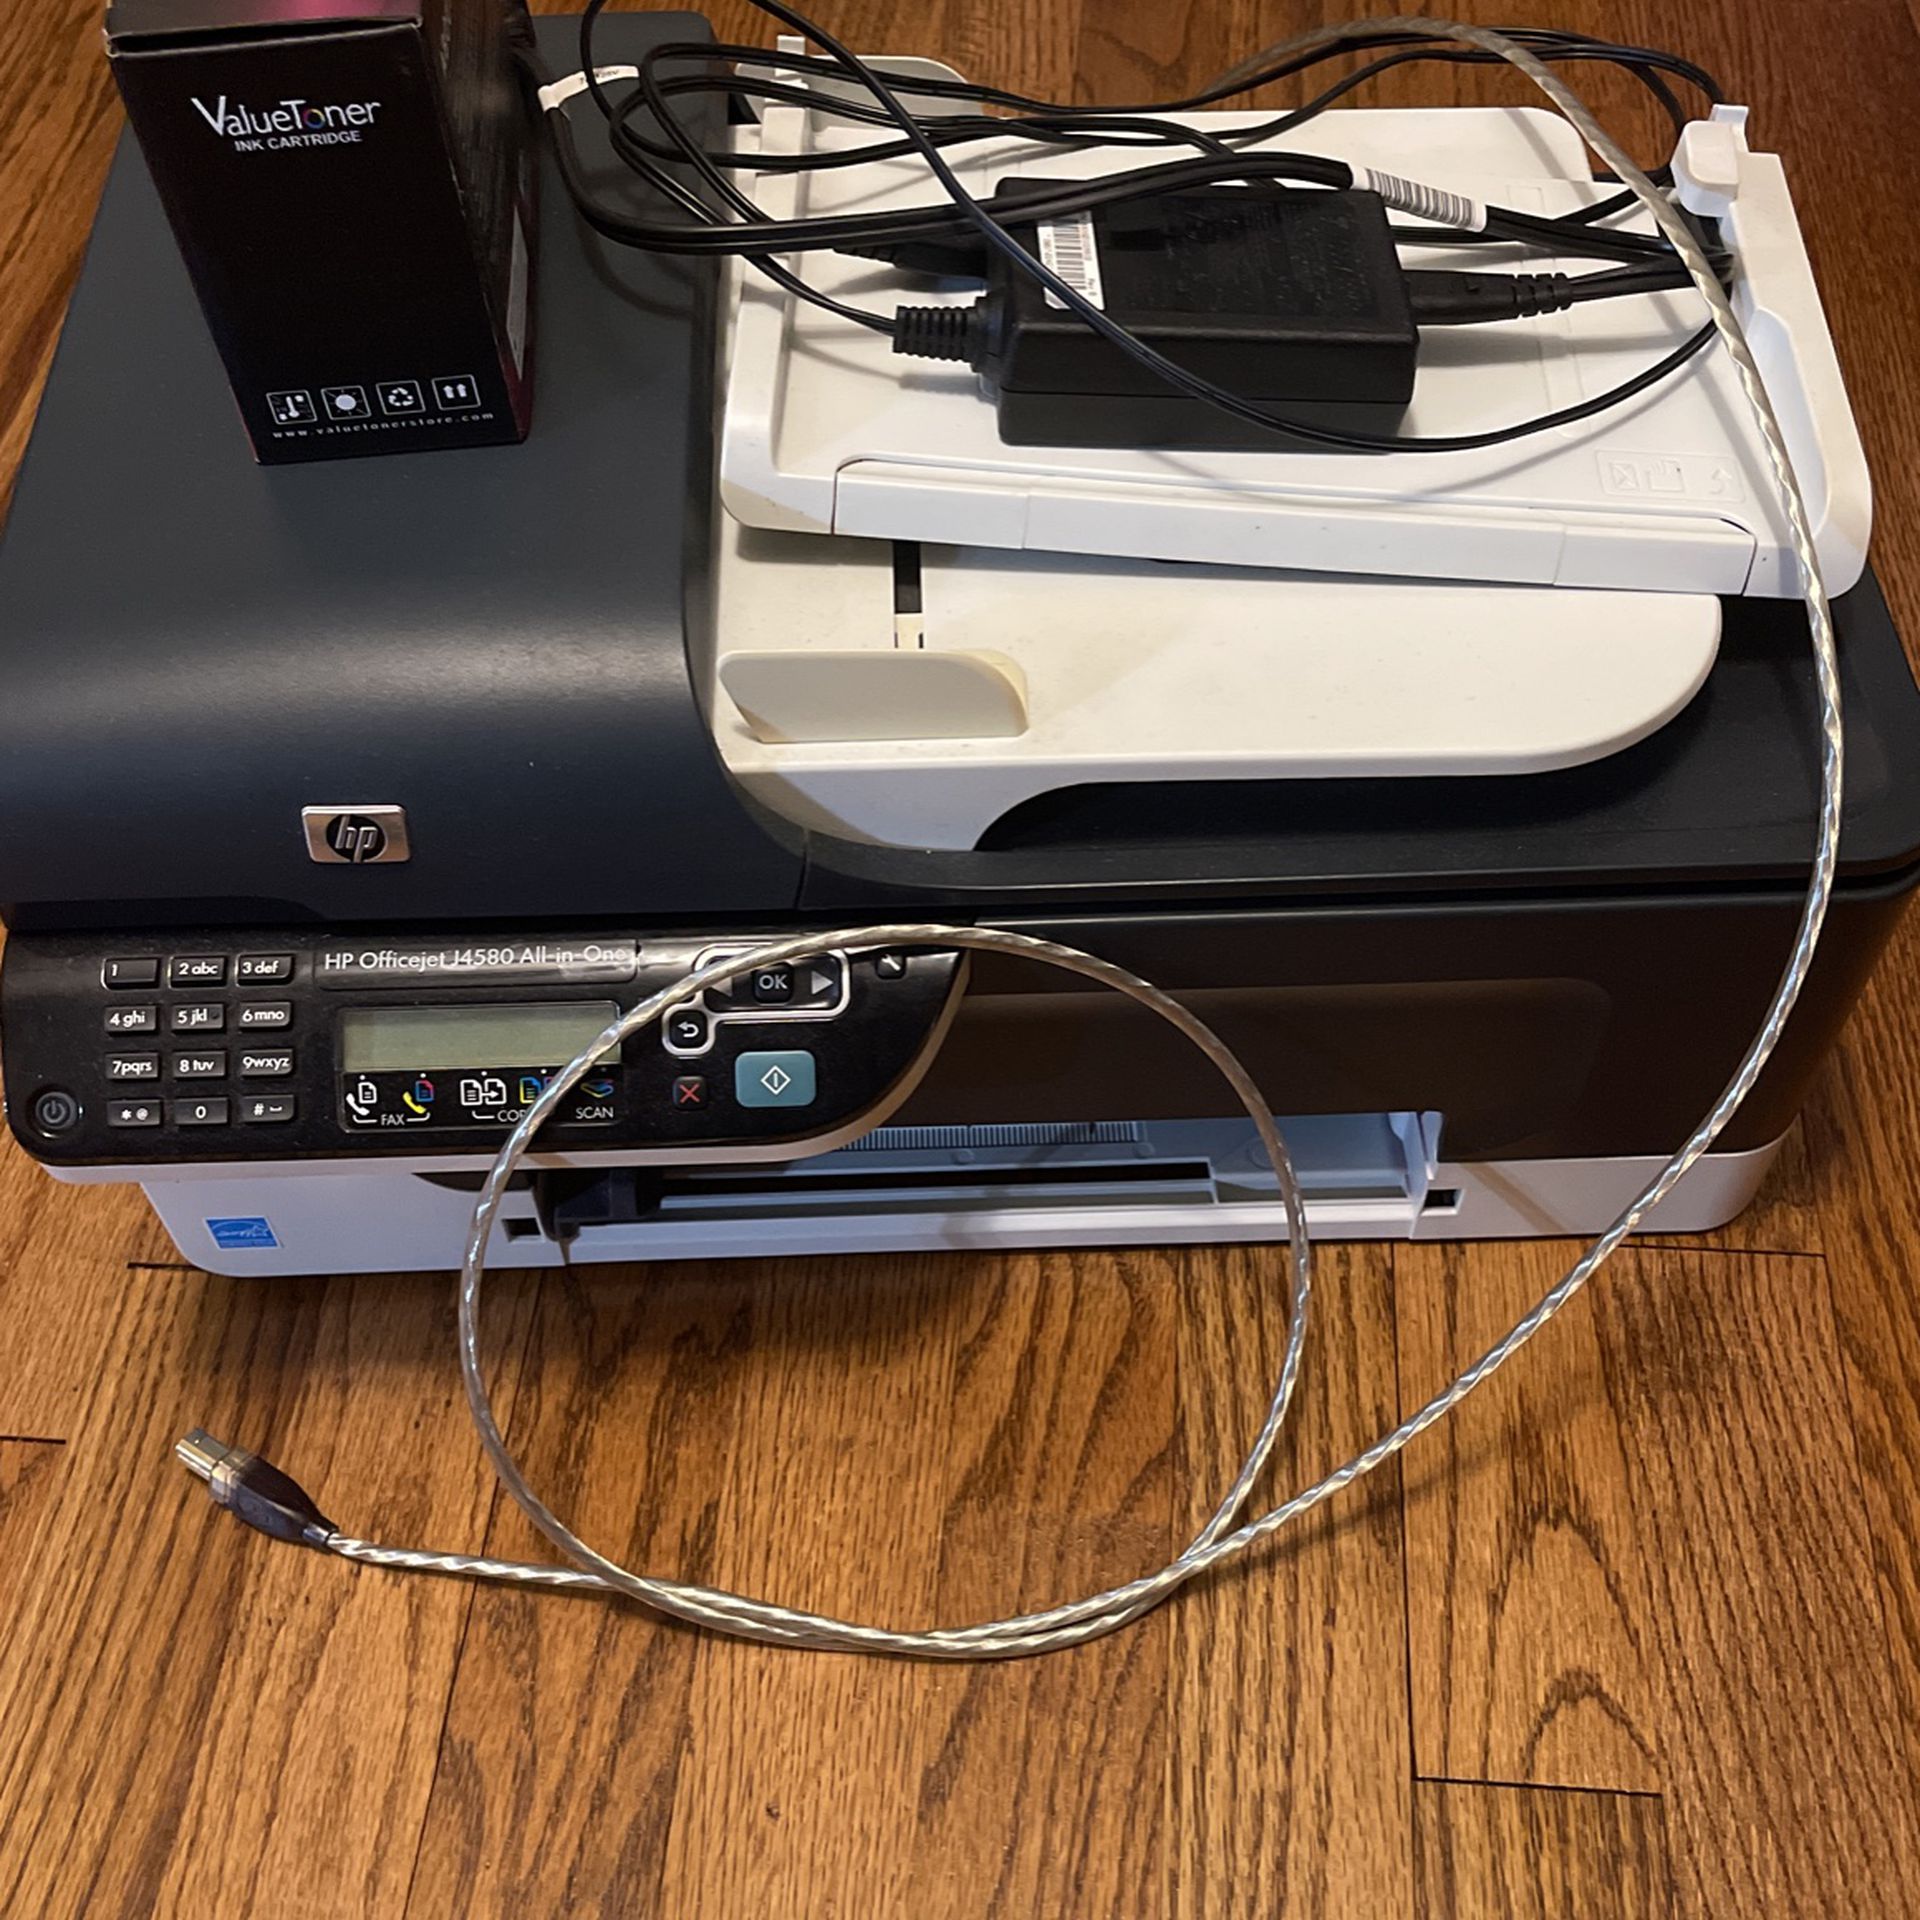 Printer, Scanner, Fax Machine